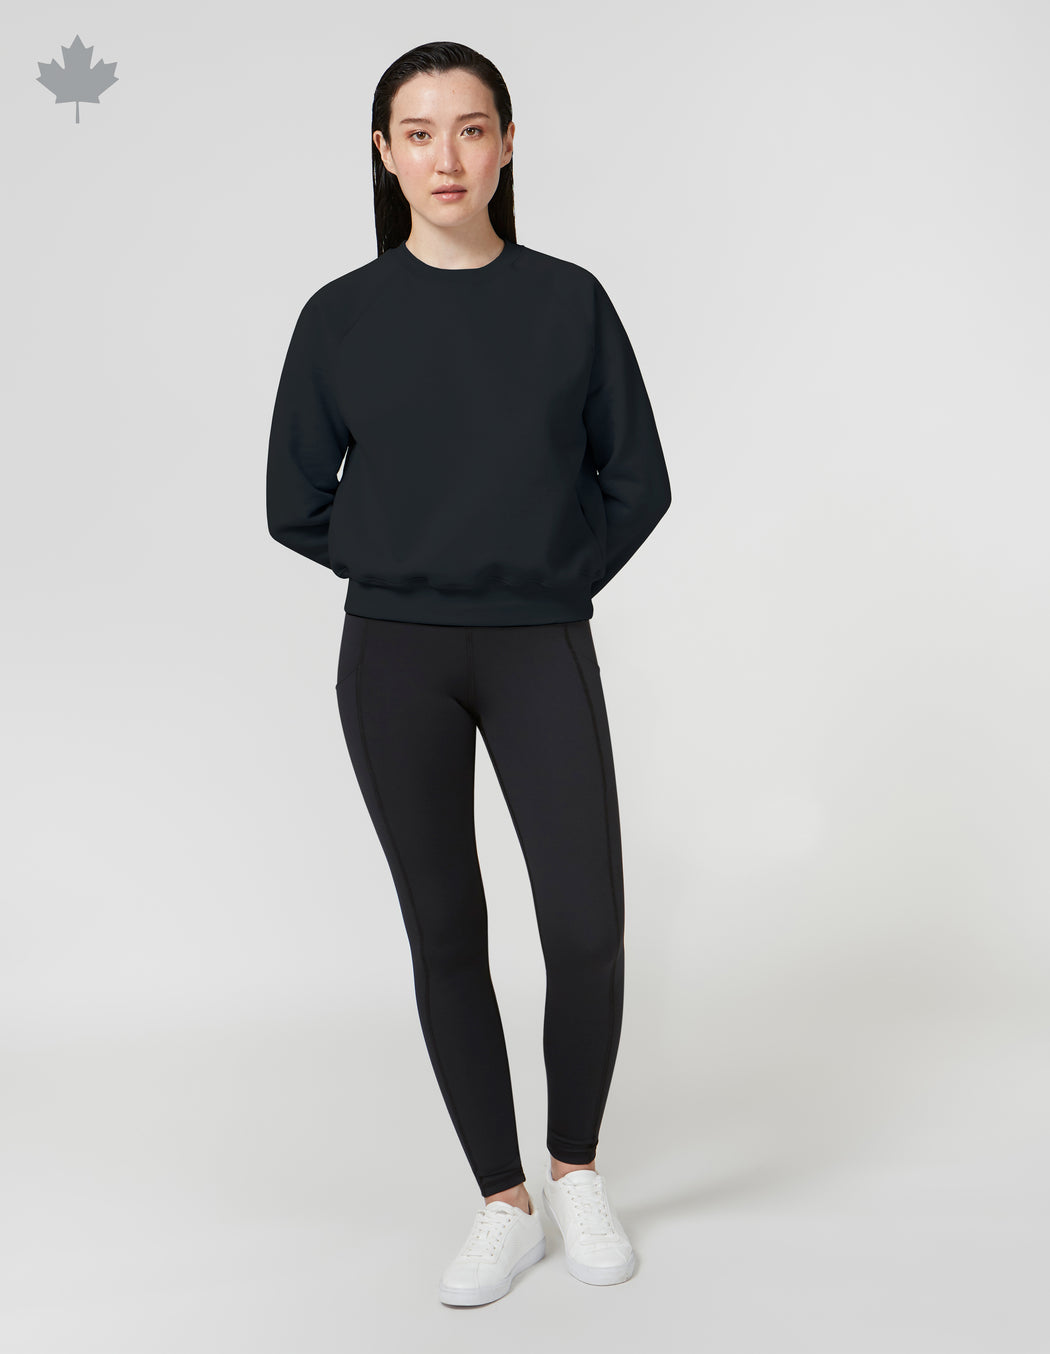 Women's Solid CROP Sweatshirt - Made in Canada